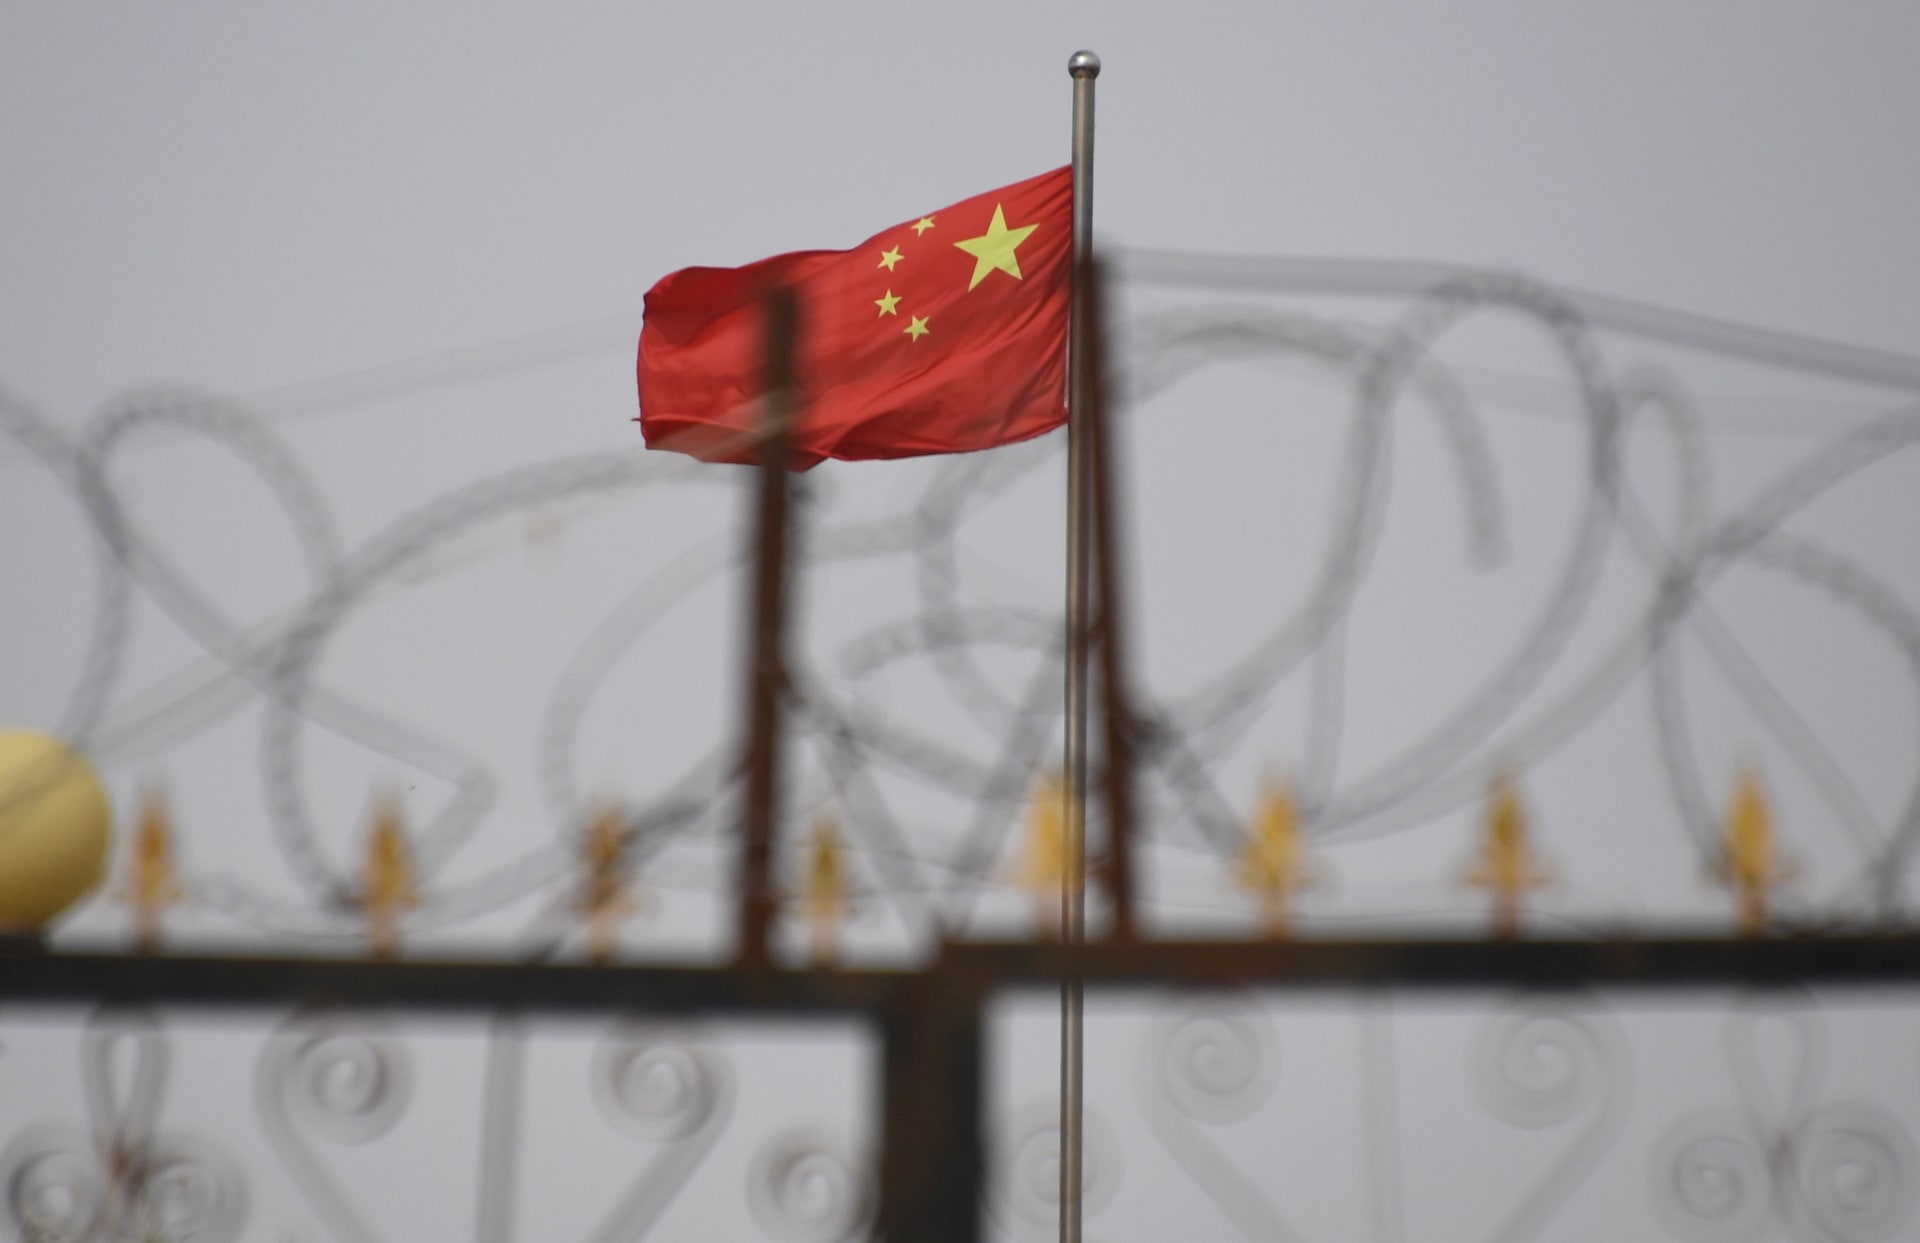 حصري لـCNN.. أول تقرير مستقل يزعم وجود أدلة لـ"نية بكين" تنفيذ إبادة جماعية في شينغيانغ و"تدمير" الأويغور